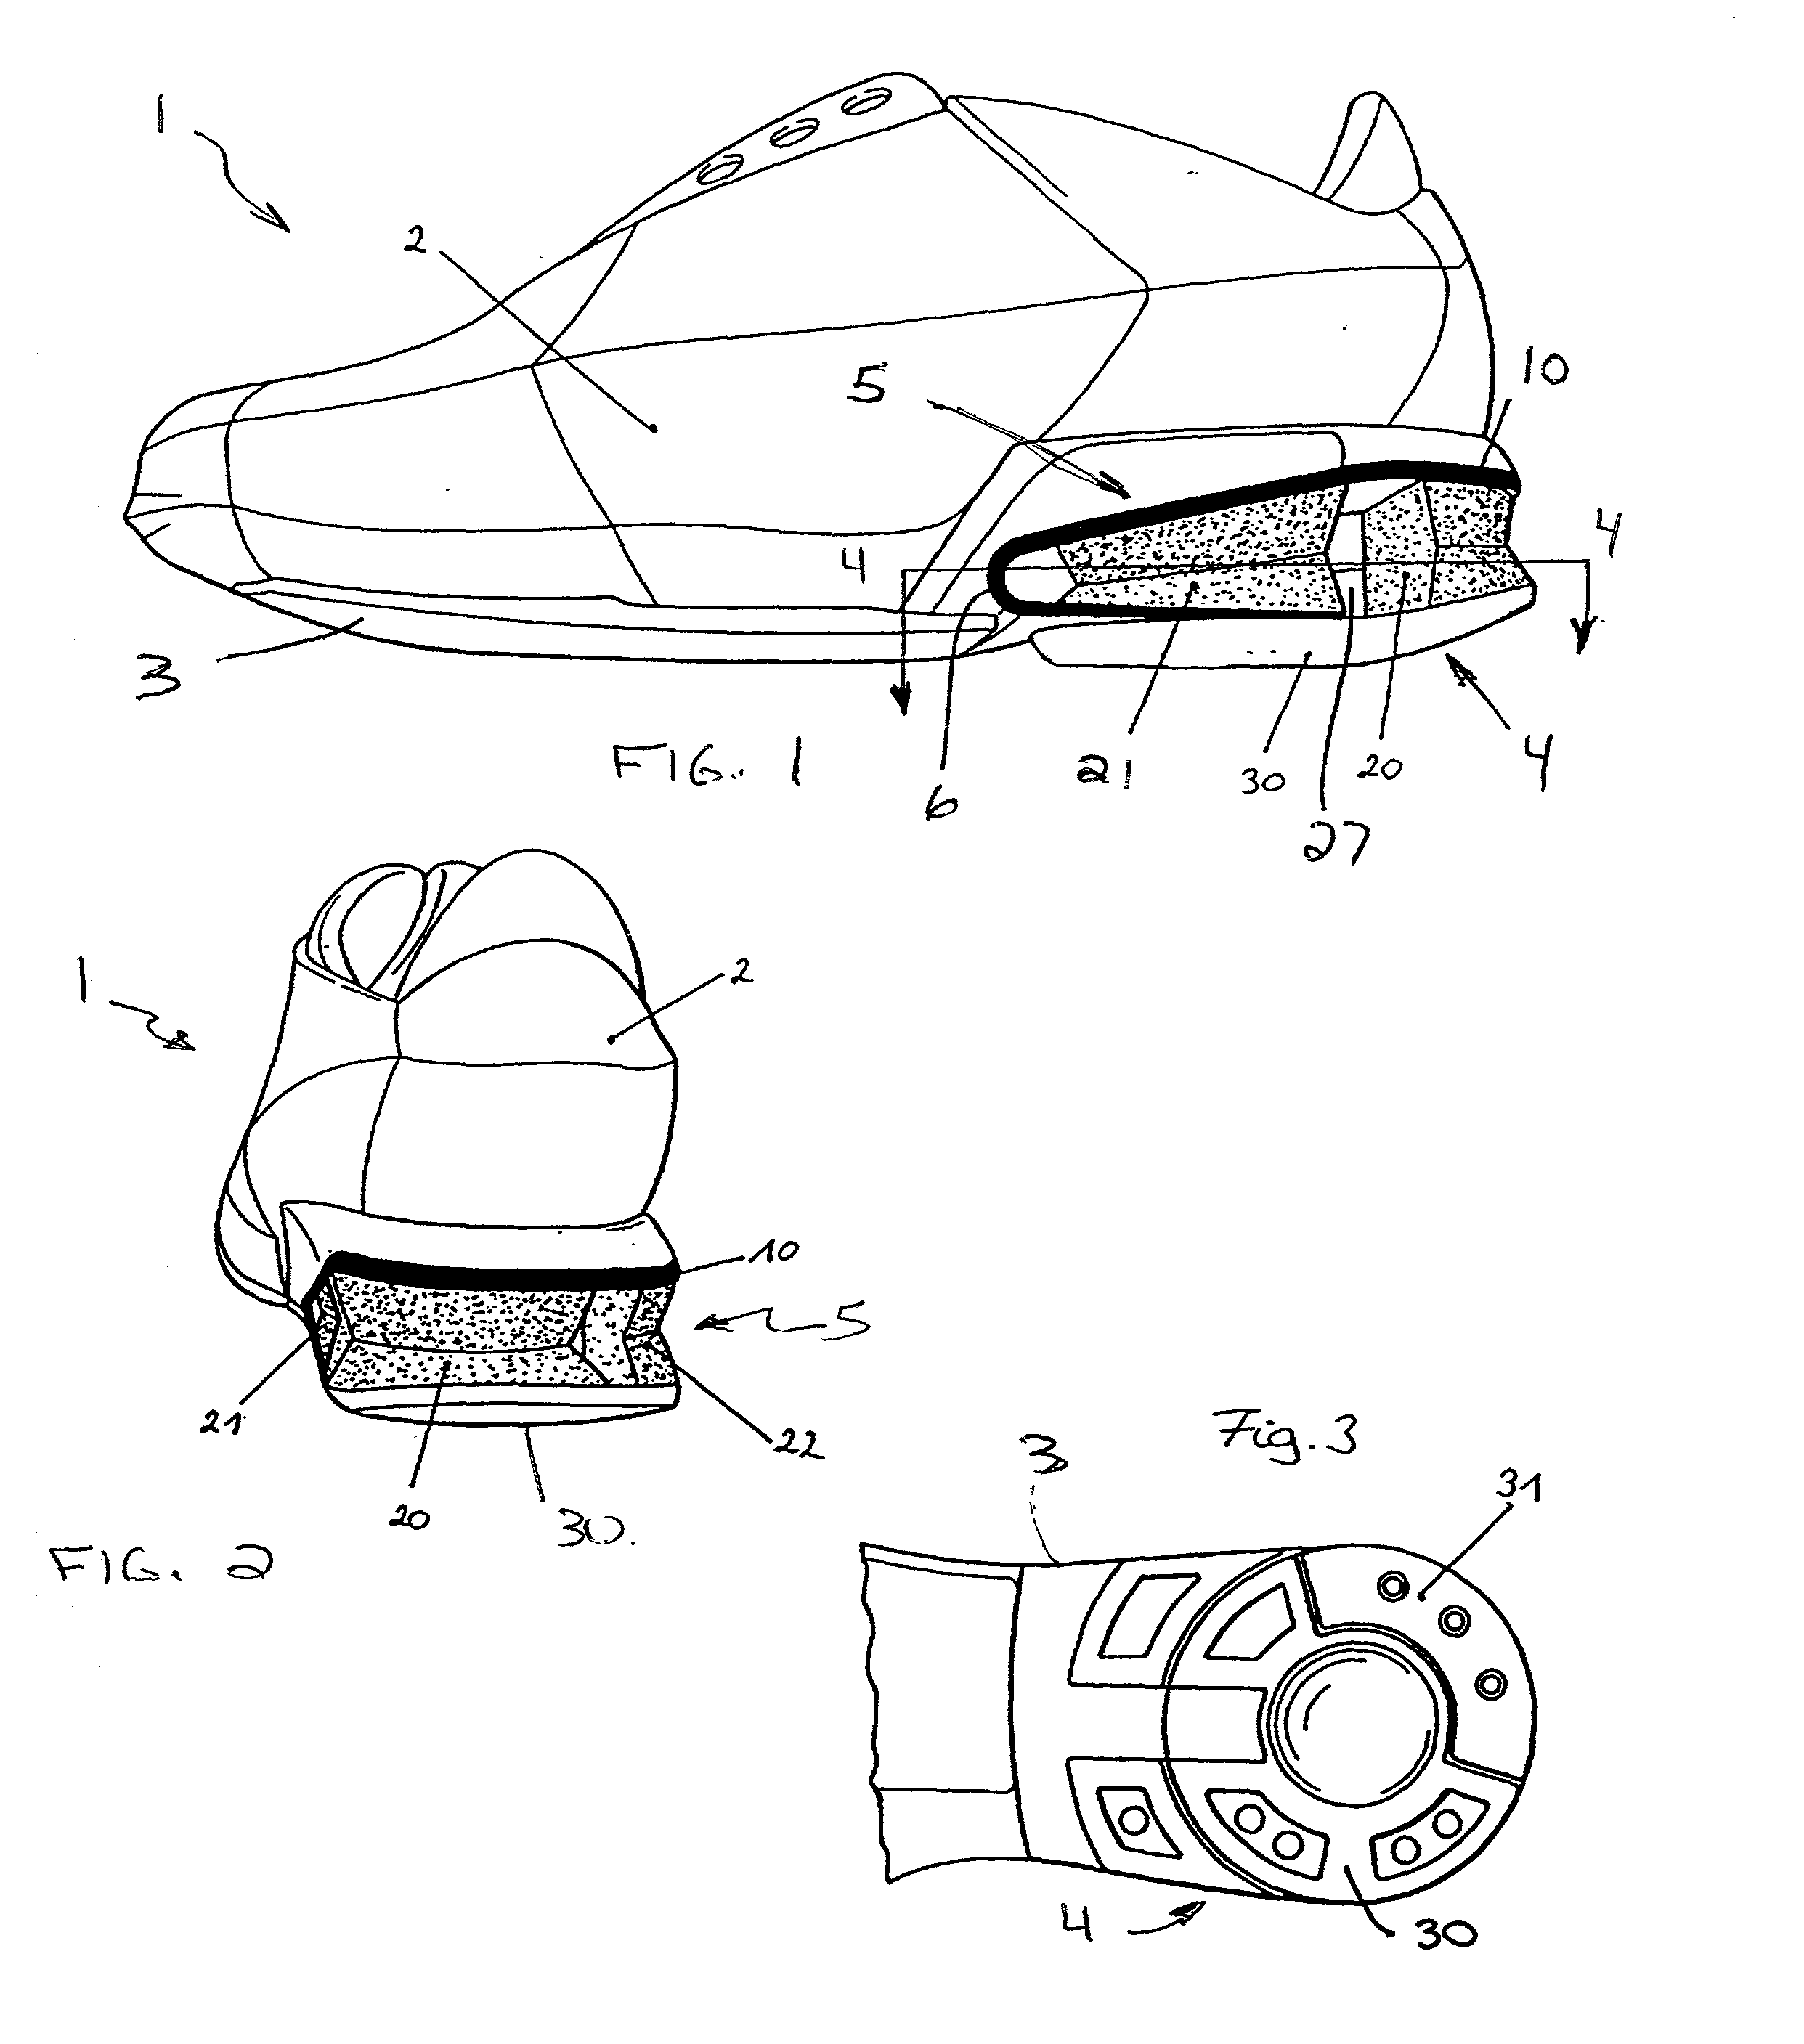 Shoe cartridge cushioning system